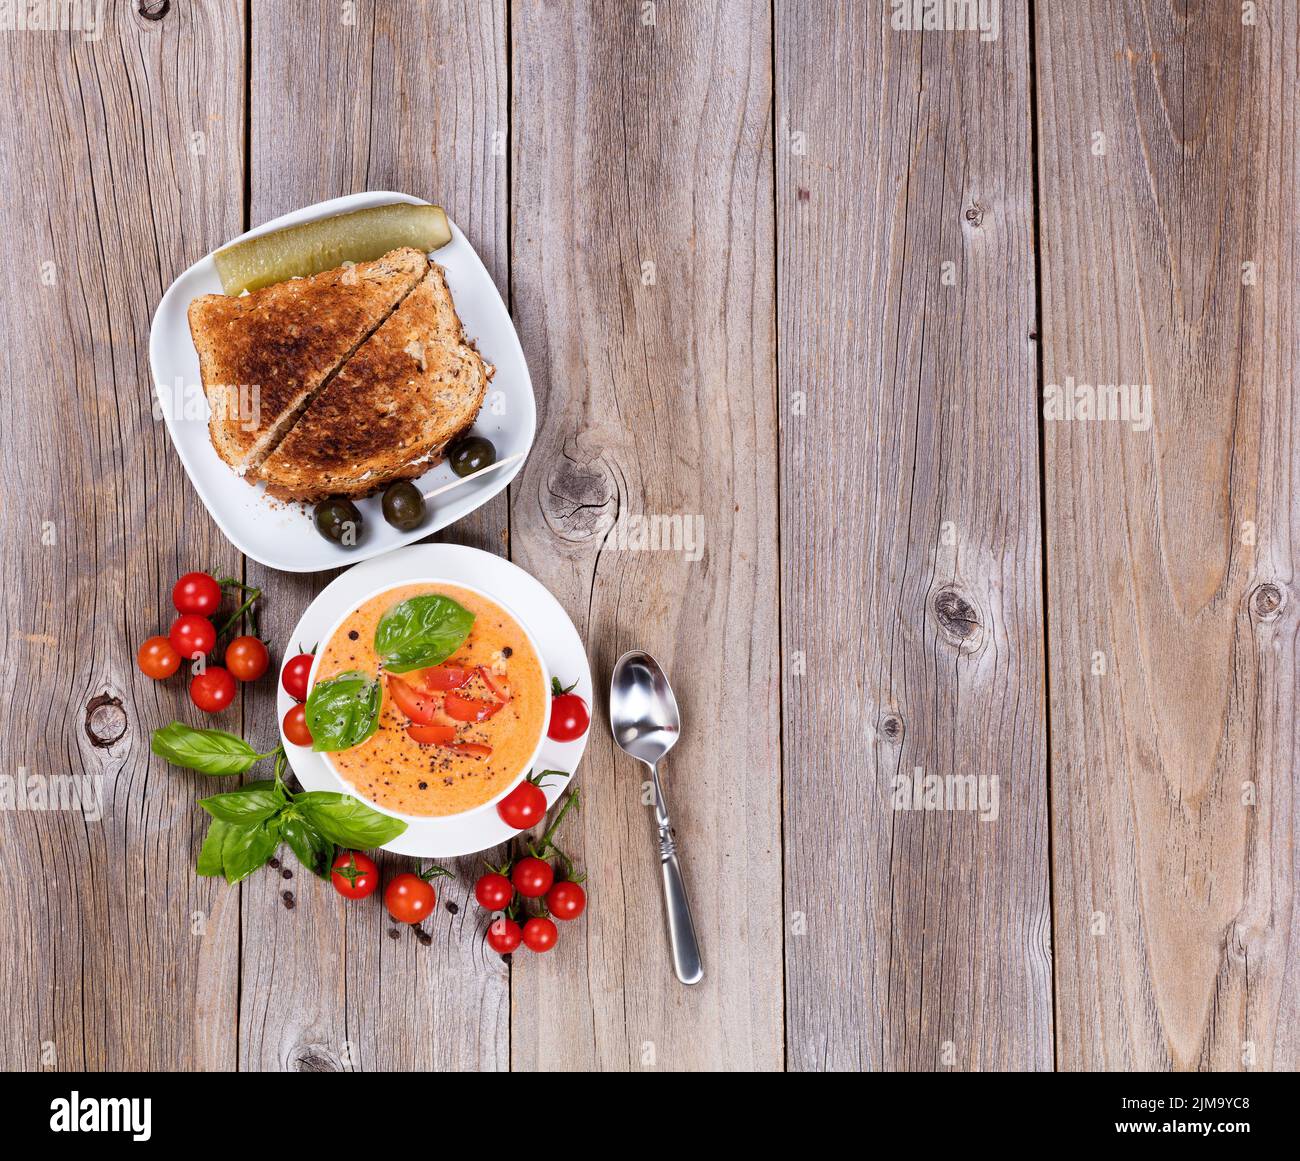 Soupe de tomates crémeuse et fraîche et sandwich aux feuilles de basilic sur des planches de bois rustiques Banque D'Images